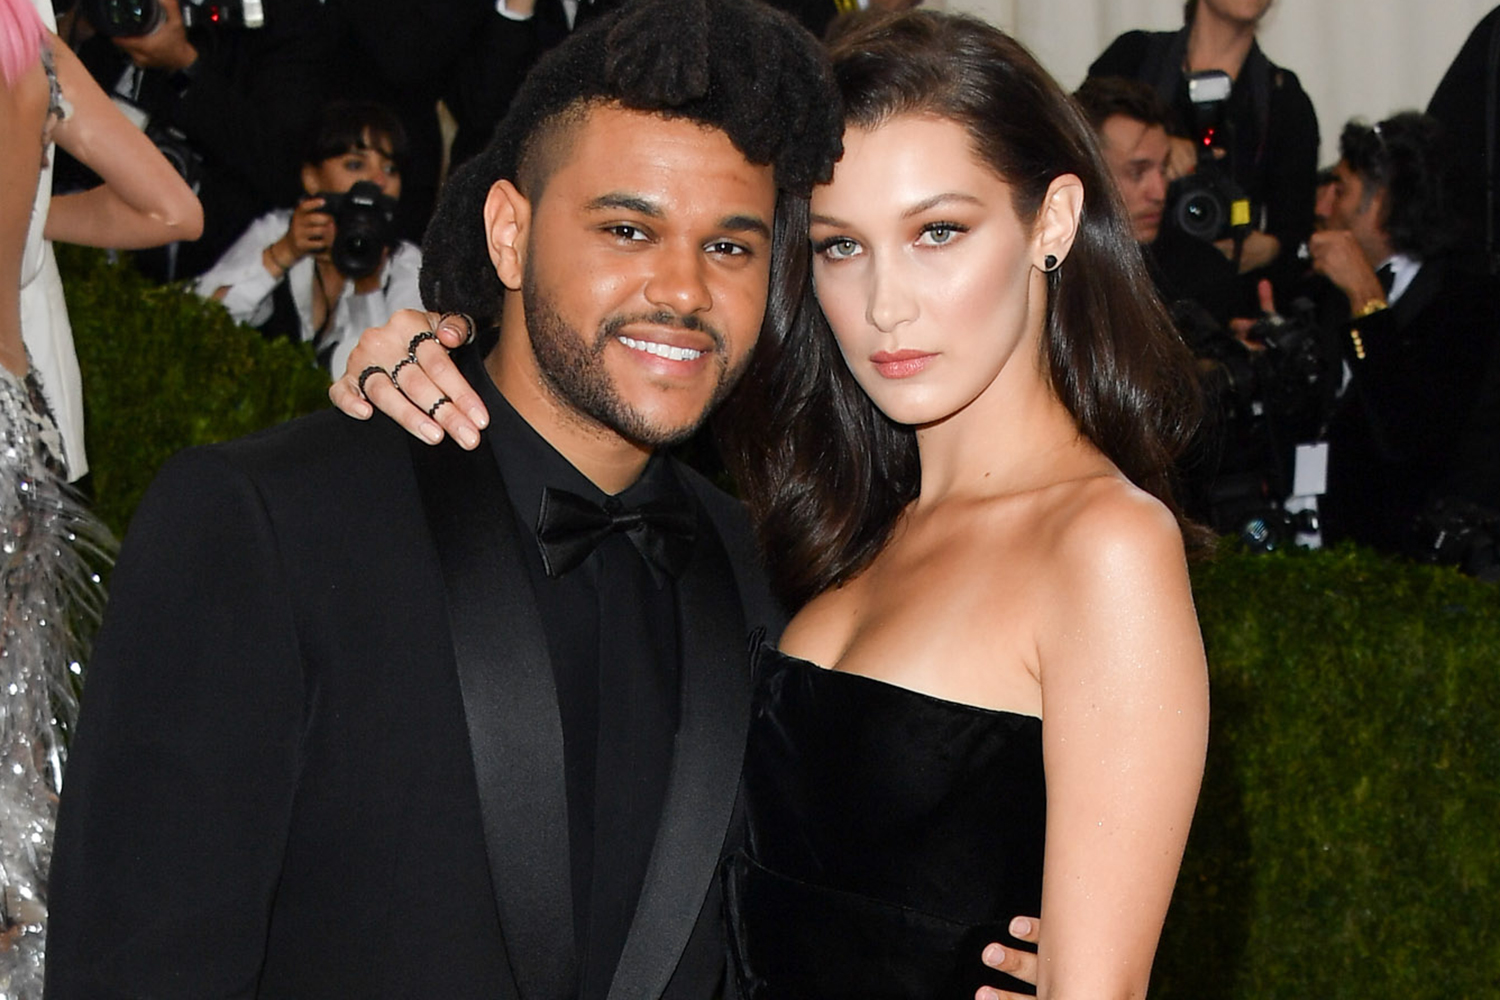 S-au SĂRUTAT sau nu The Weeknd și Bella Hadid la Festivalul Coachella? Am aflat adevărul!